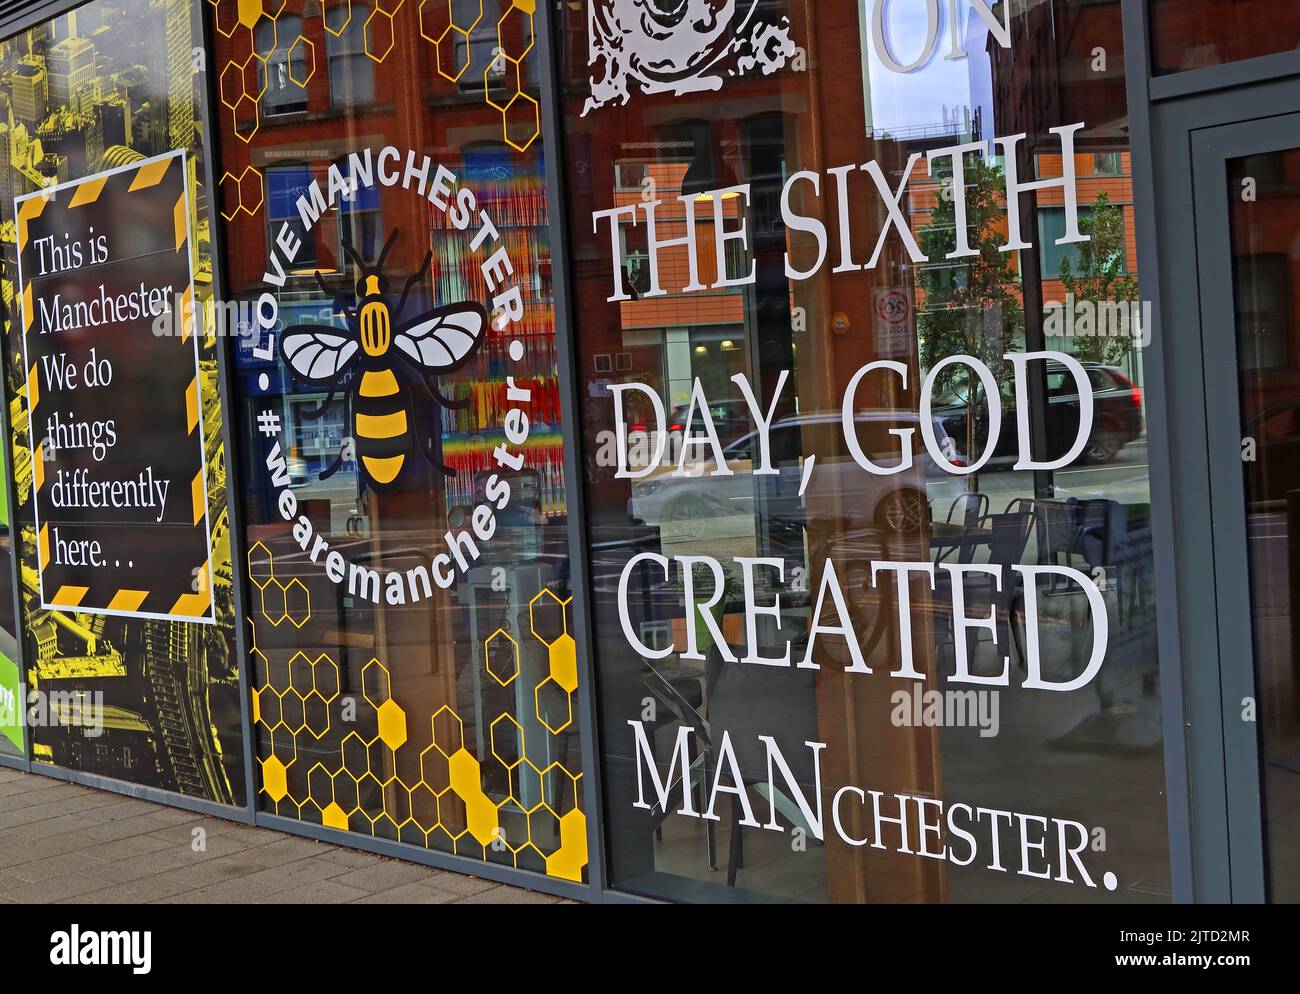 Le sixième jour, Dieu a créé Manchester, LoveManchester, WeLoveManchester, c'est Manchester, nous faisons les choses différemment ici Banque D'Images